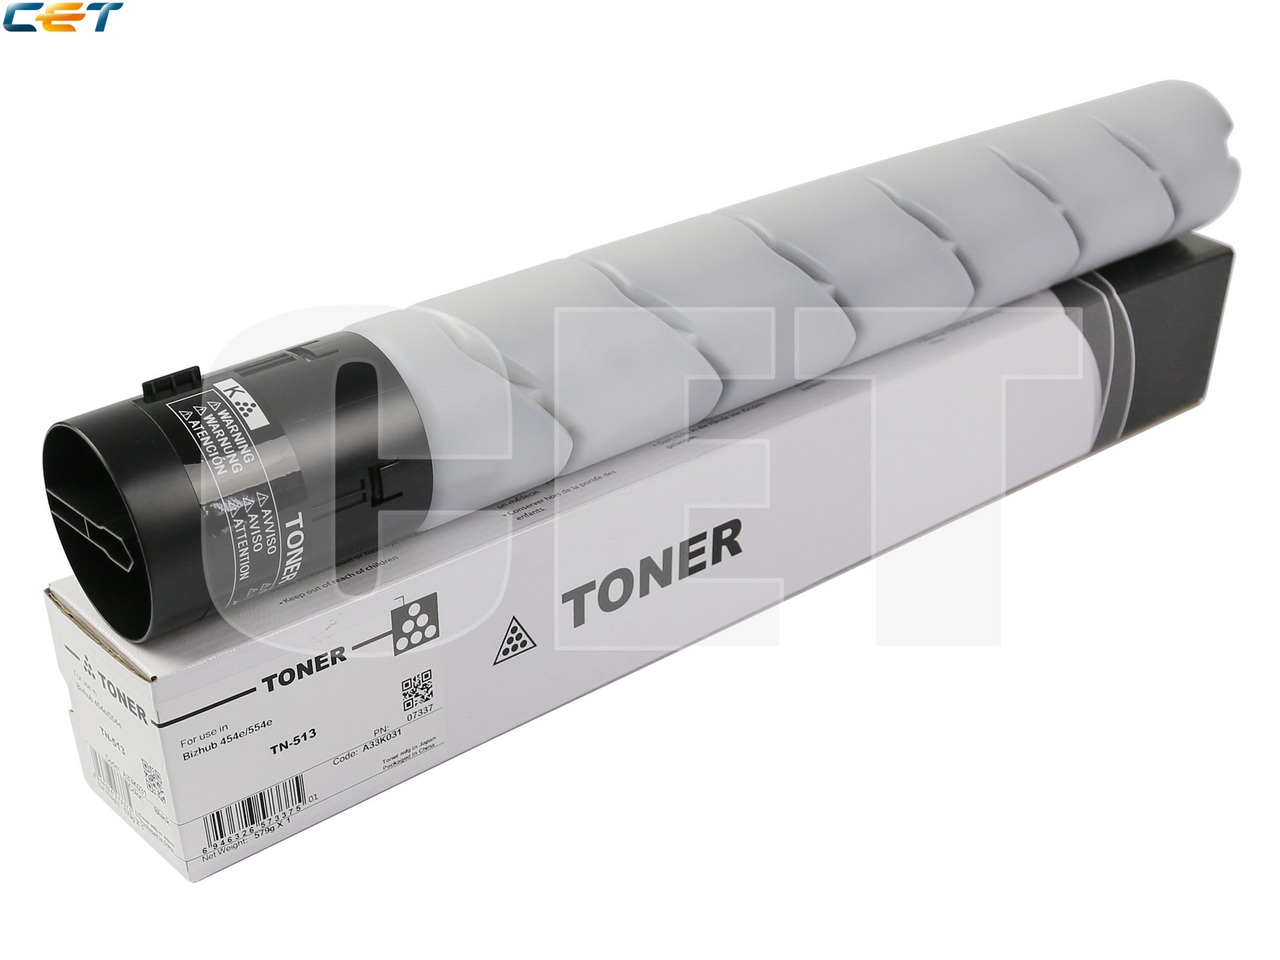 Тонер-картридж TN-513 для KONICA MINOLTA Bizhub454e/554e (CET), 579г, 24400 стр., CET7337